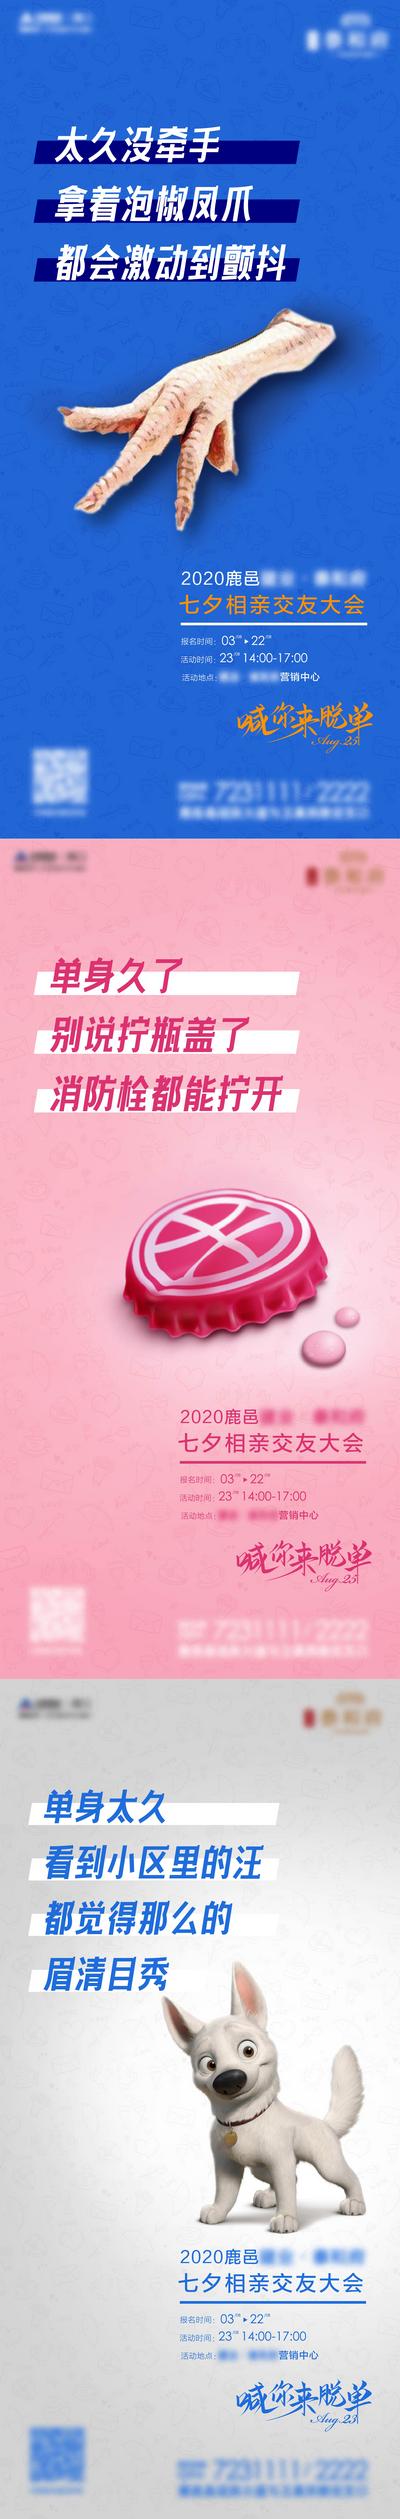 南门网 海报 房地产 中国传统节日 七夕 单身狗 瓶盖